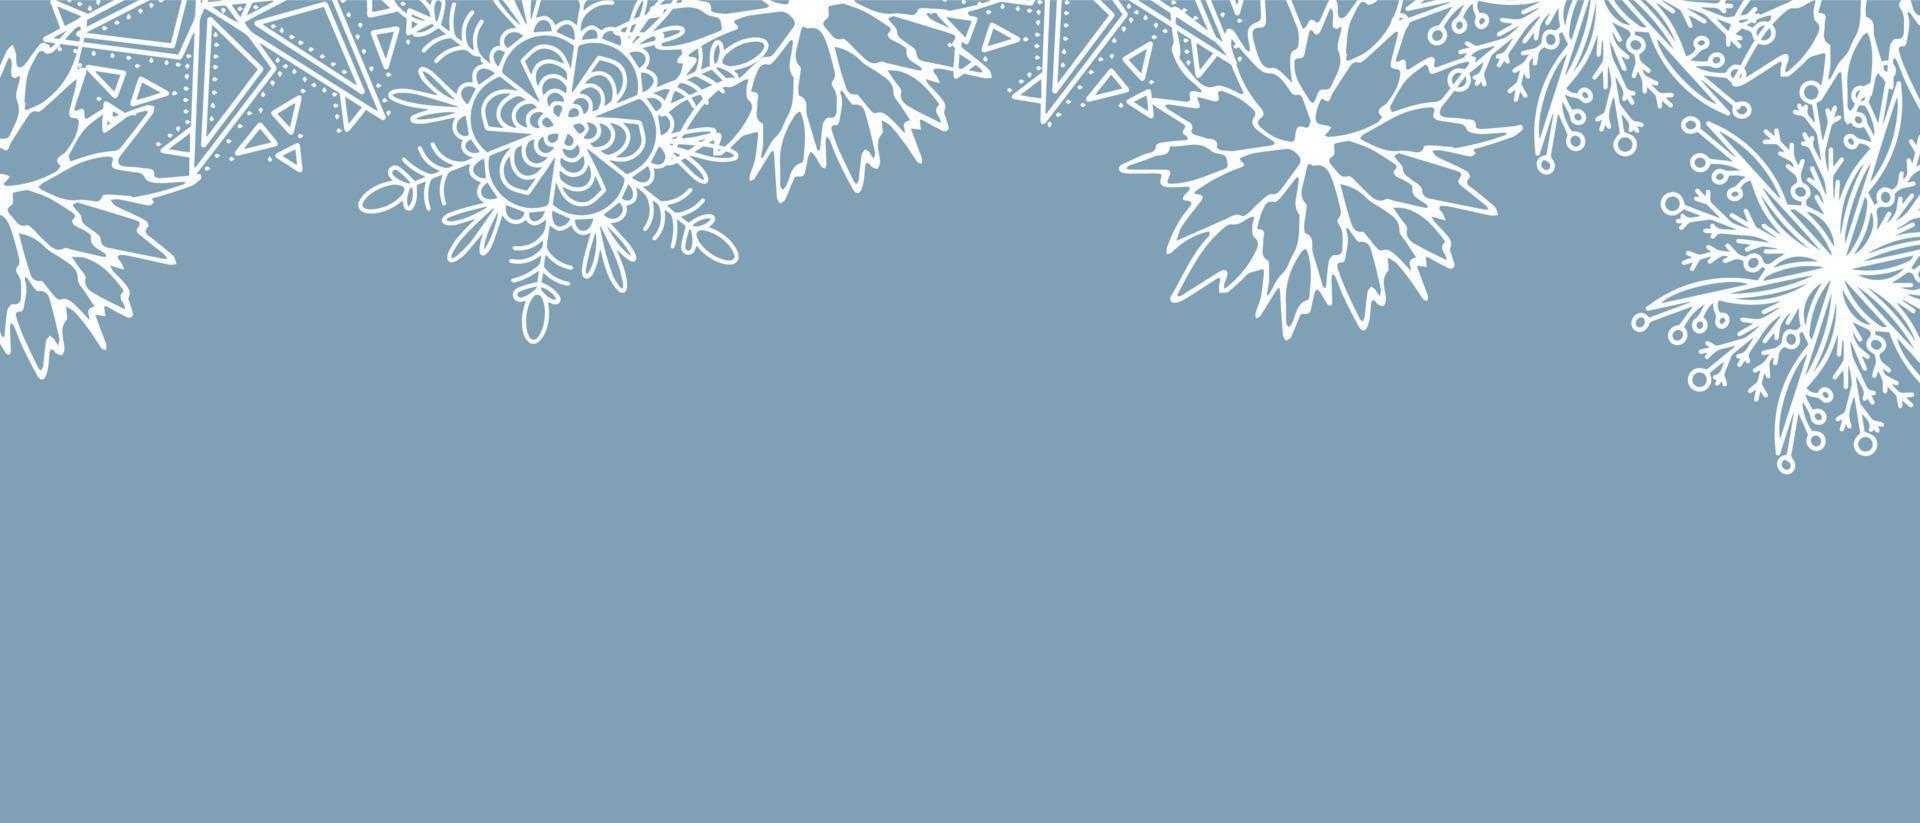 bel ensemble d'éléments botaniques blancs arbre de noël, baies pour la conception d'hiver. collection d'éléments de noël nouvel an. silhouettes gelées de brindilles de cristal sur fond bleu. vecteur